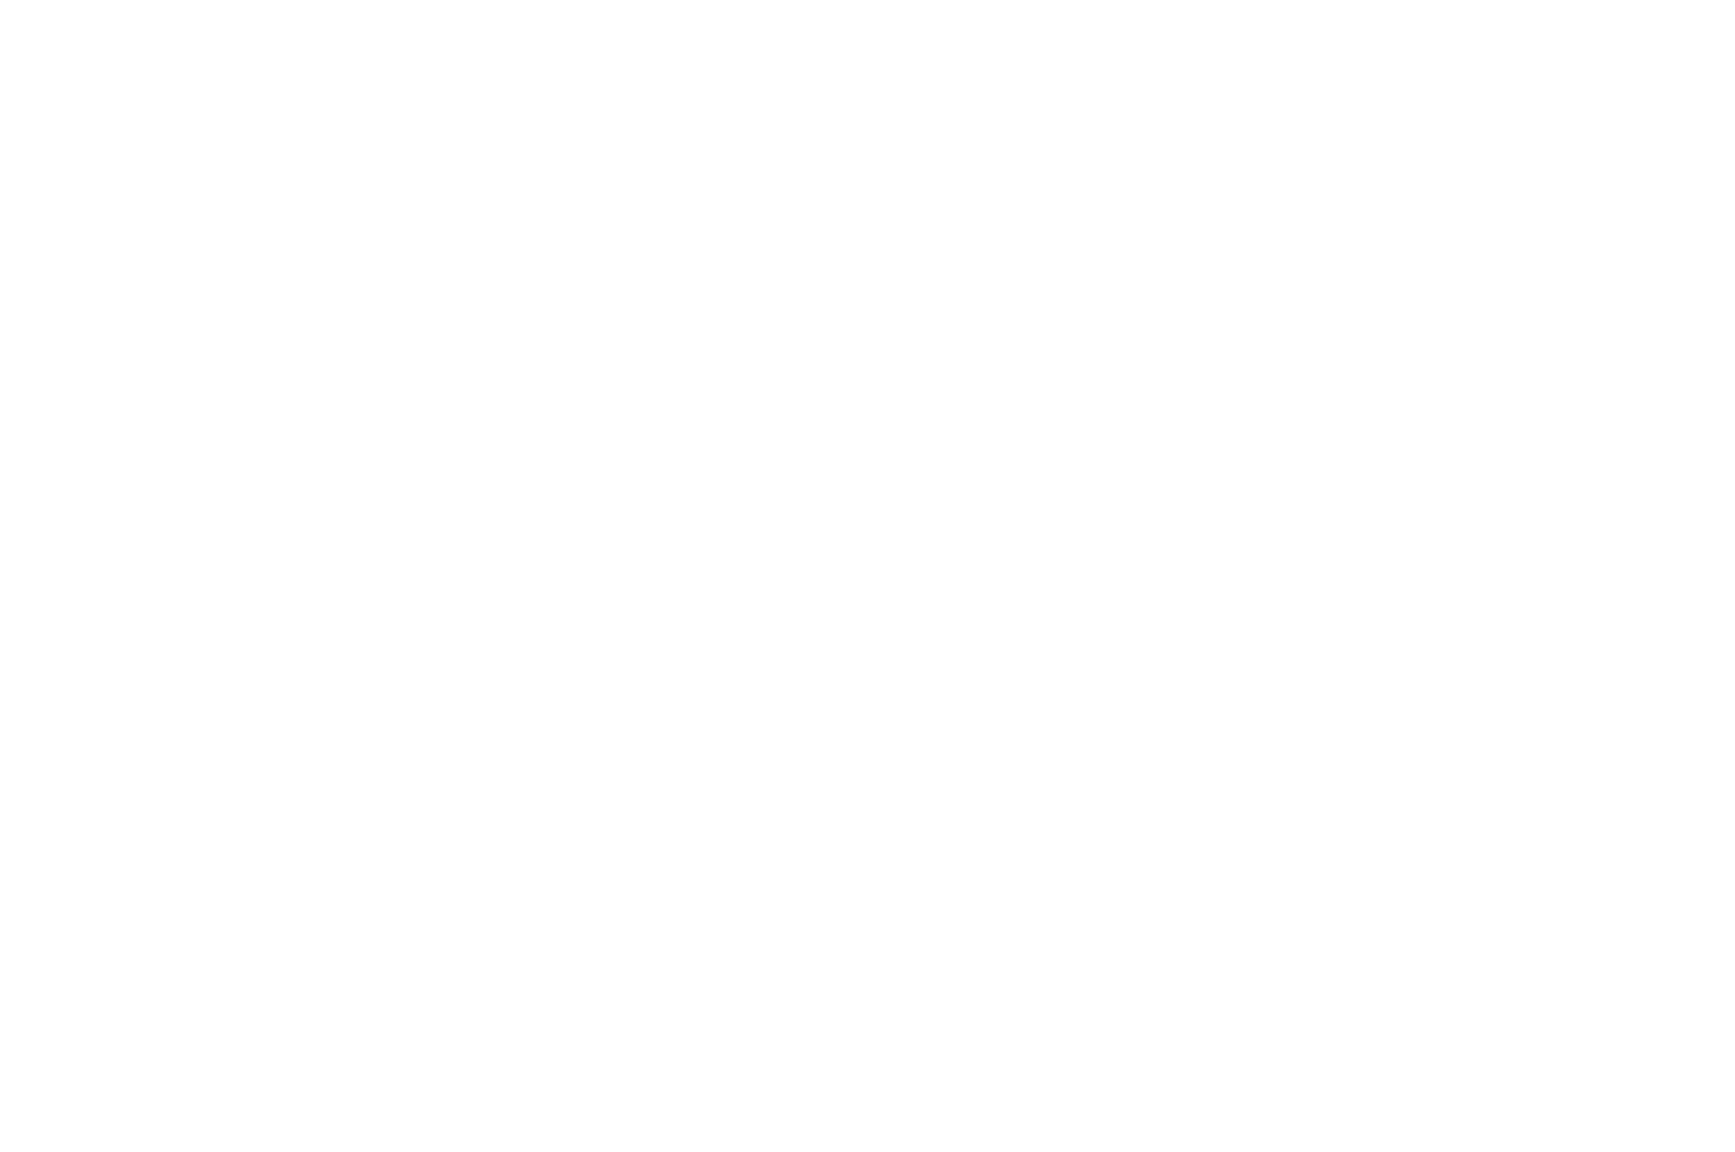 OFFICIAL SELECTION - NEW DELHI FILM FESTIVAL-NDFF International - 2021 (1) (1)